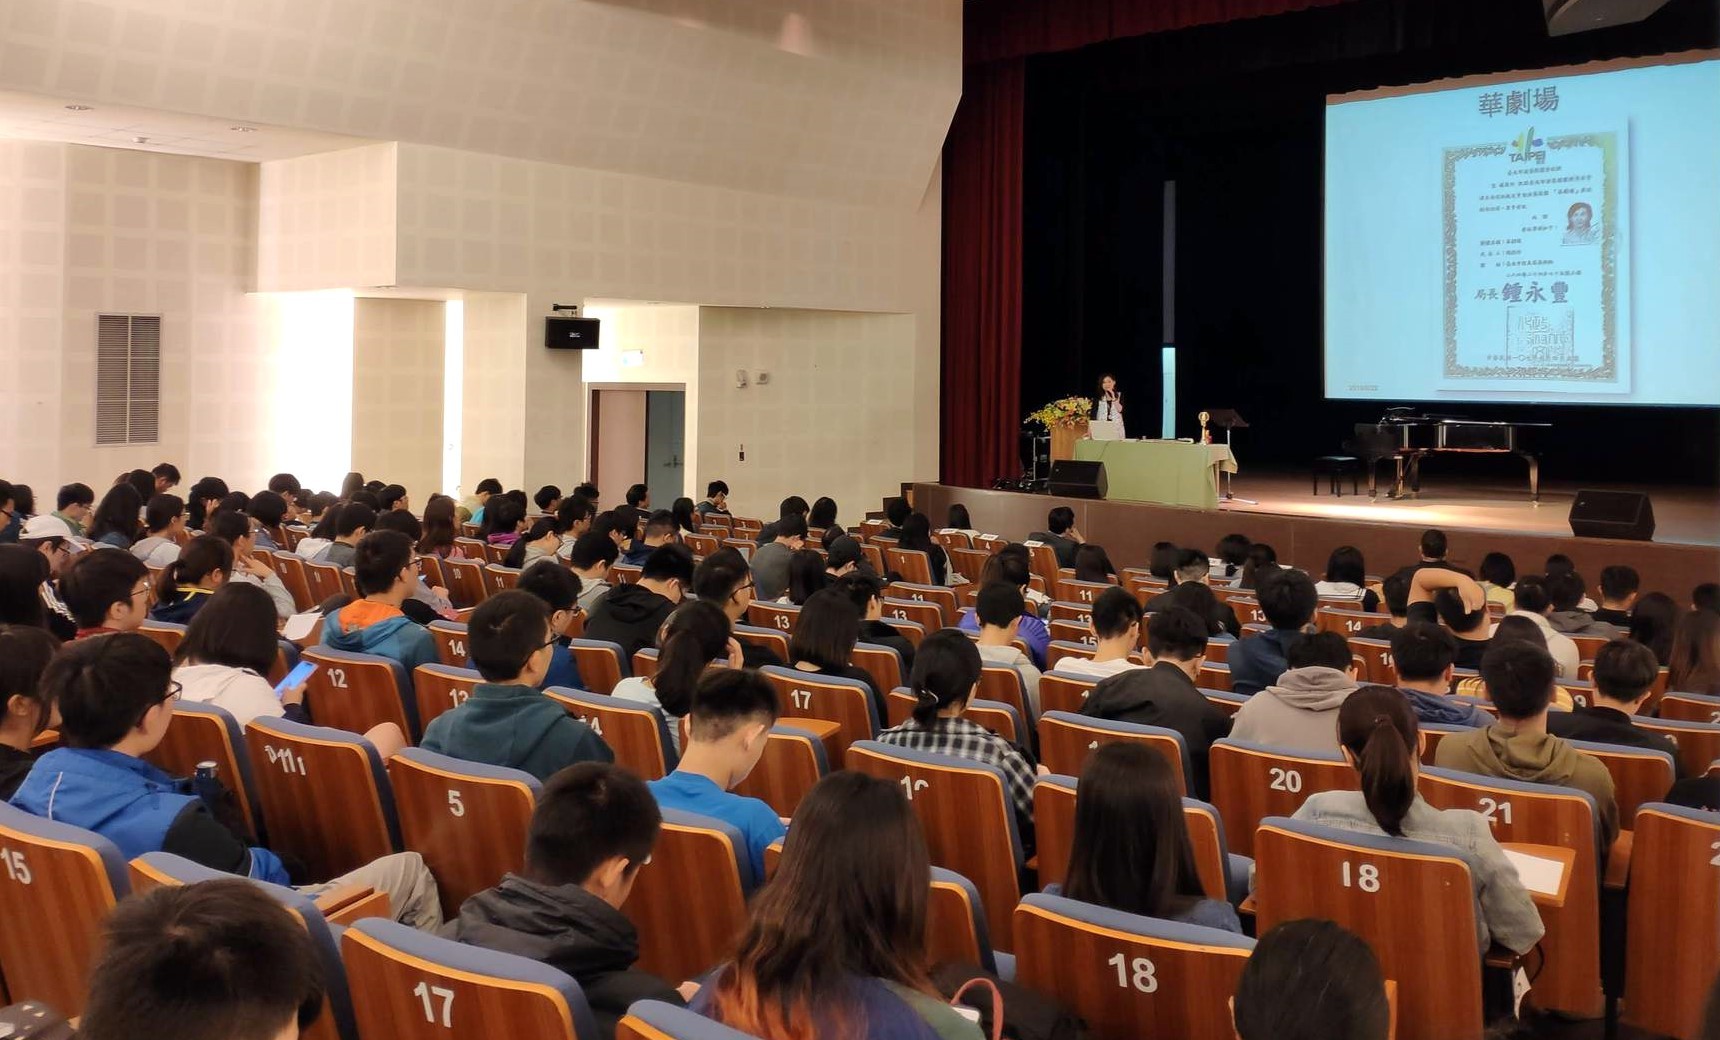 華姵老師講座有超過2百位同學到場聆聽